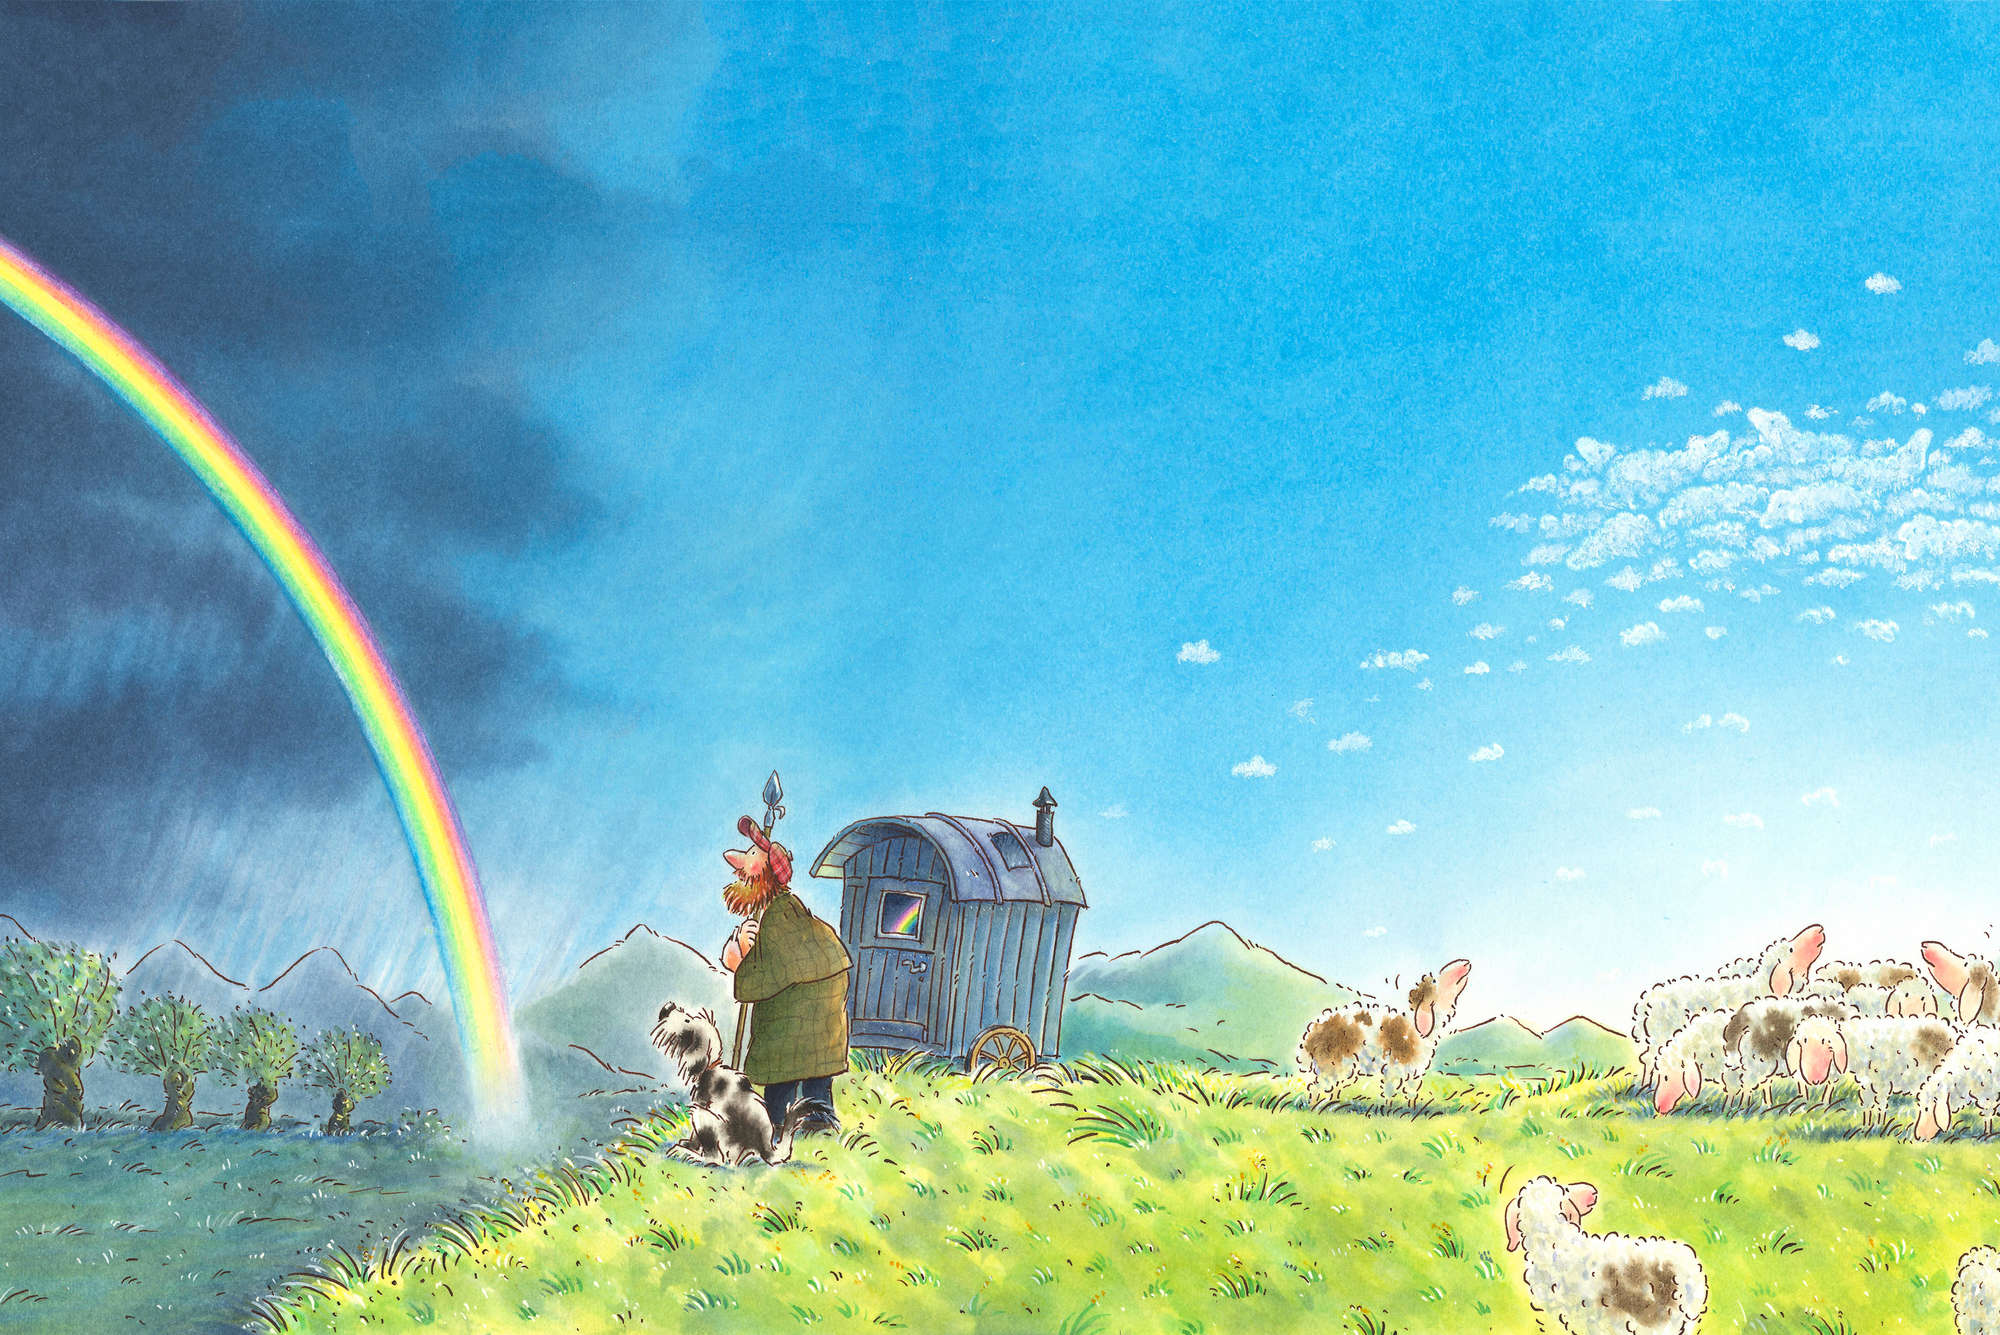             Kindermuurschildering Shepherd met hond en regenboog op eersteklas gladde fleece
        